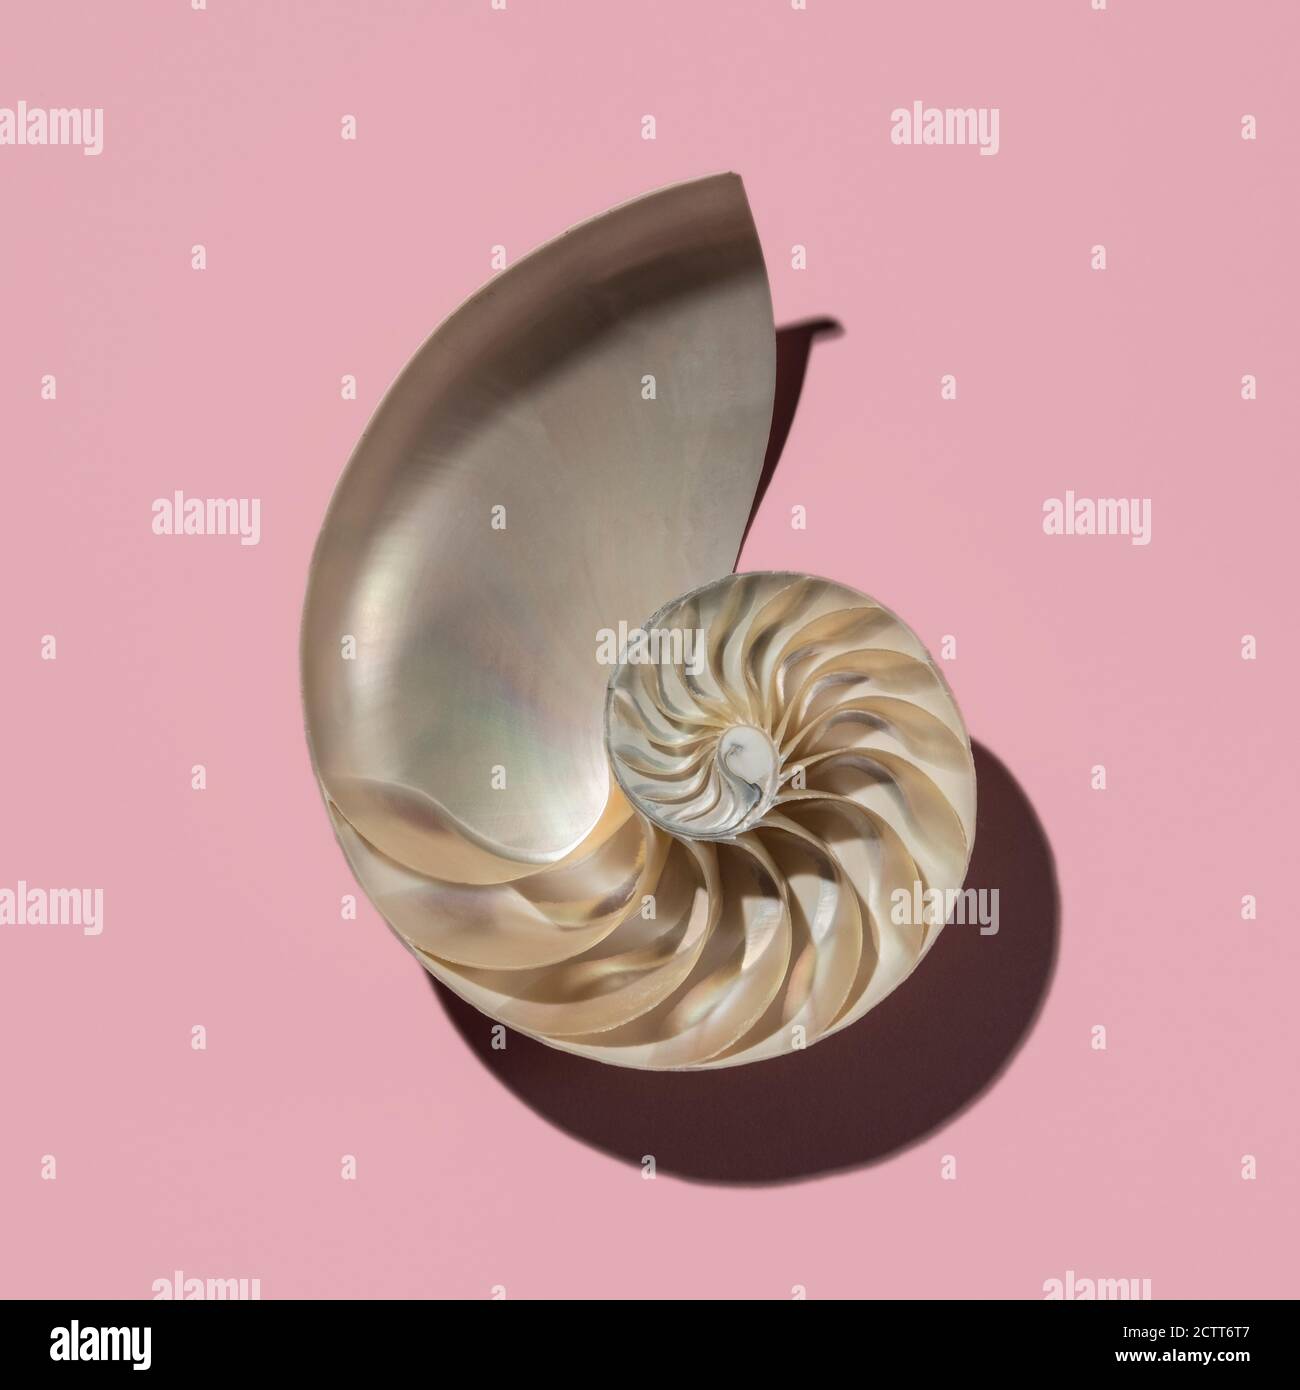 Cross section of nautilus shell showing Fibonacci pattern on pink background Stock Photo